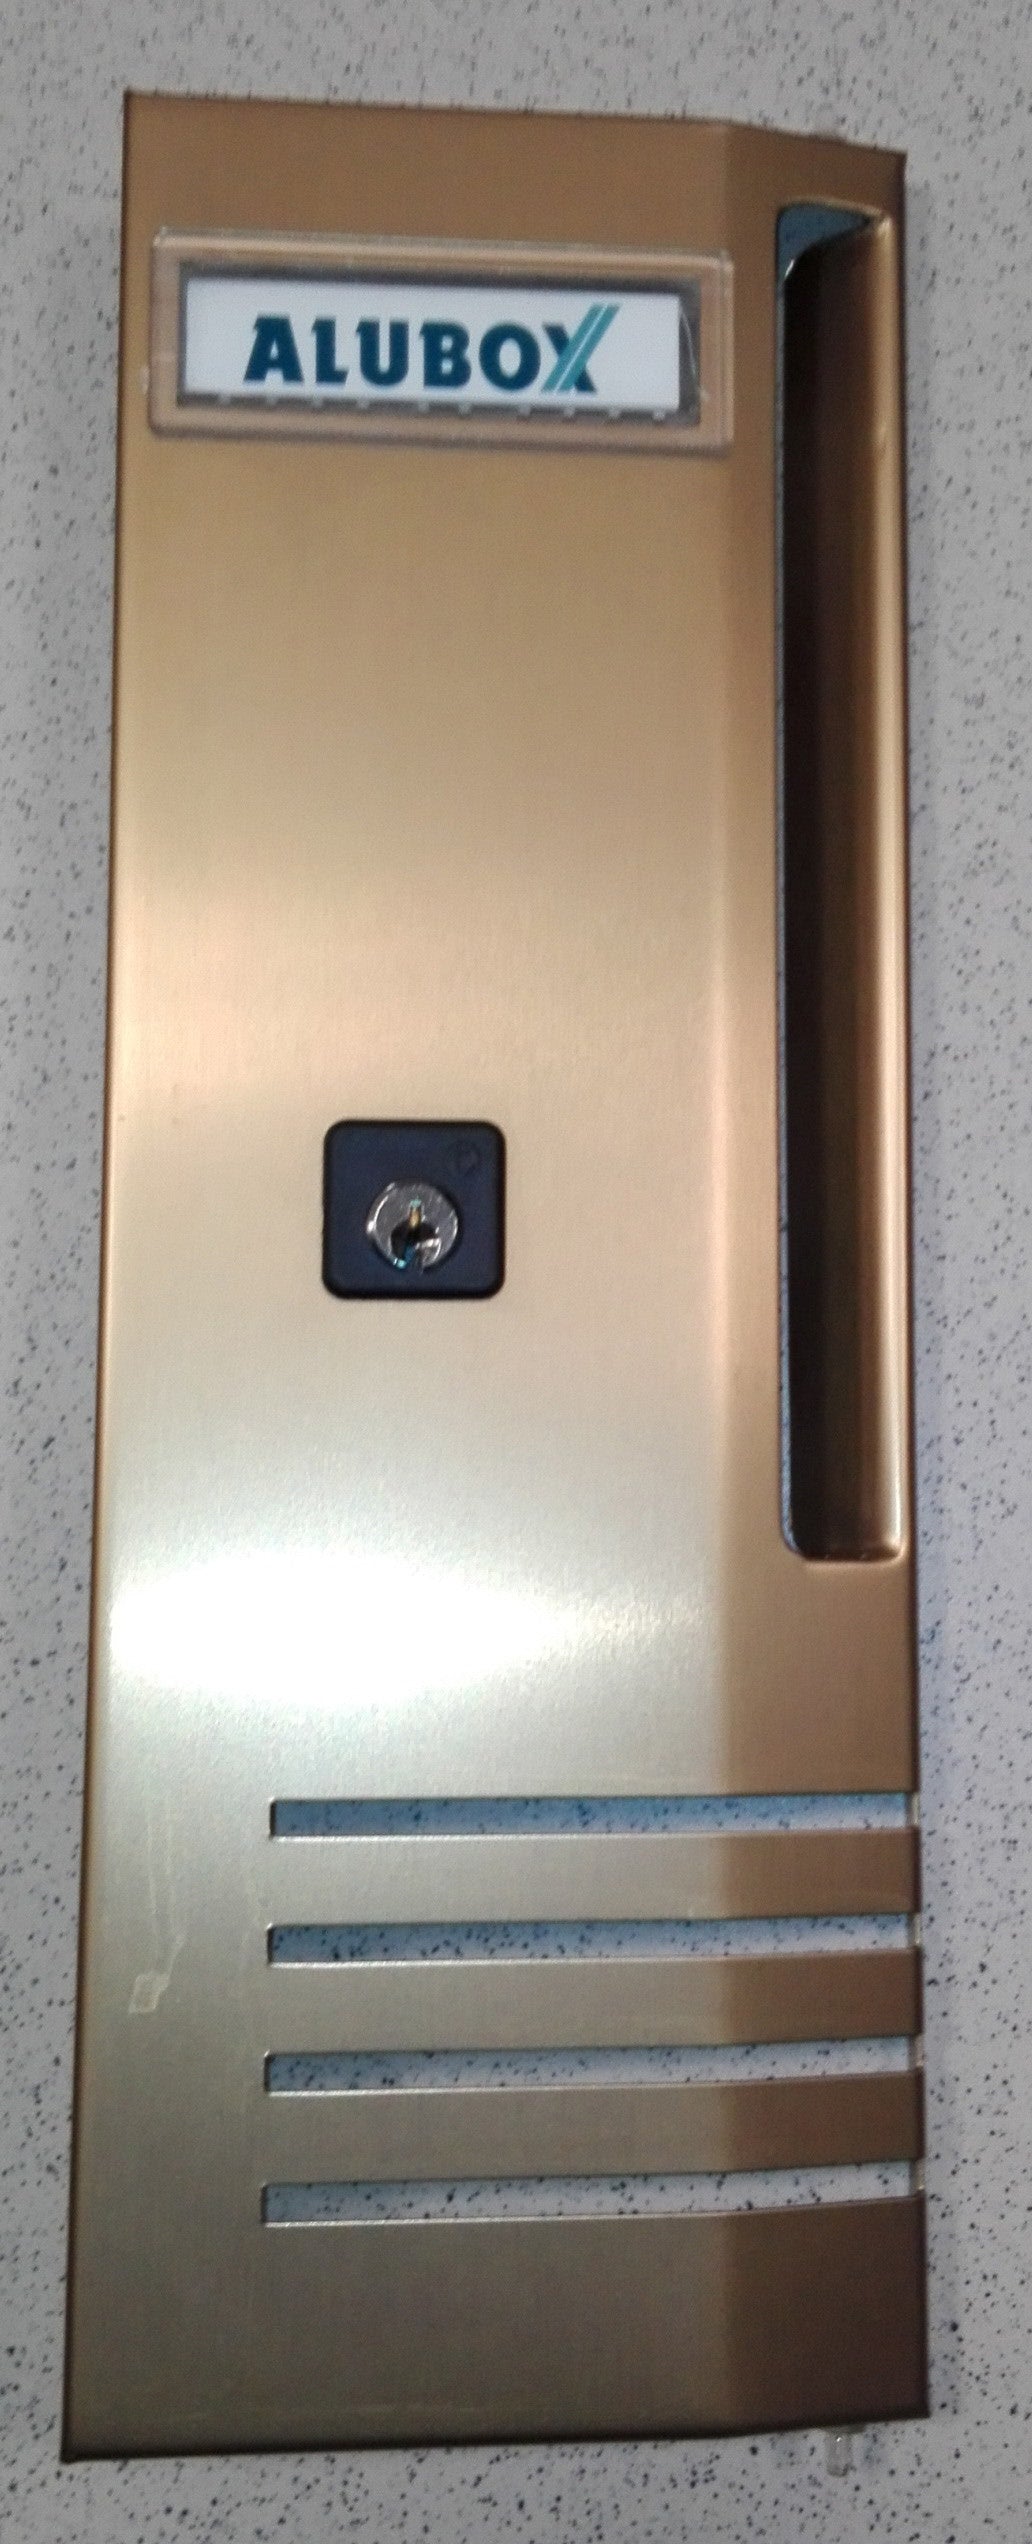 Zz-alubox cassetta-(sportellino con chiave)